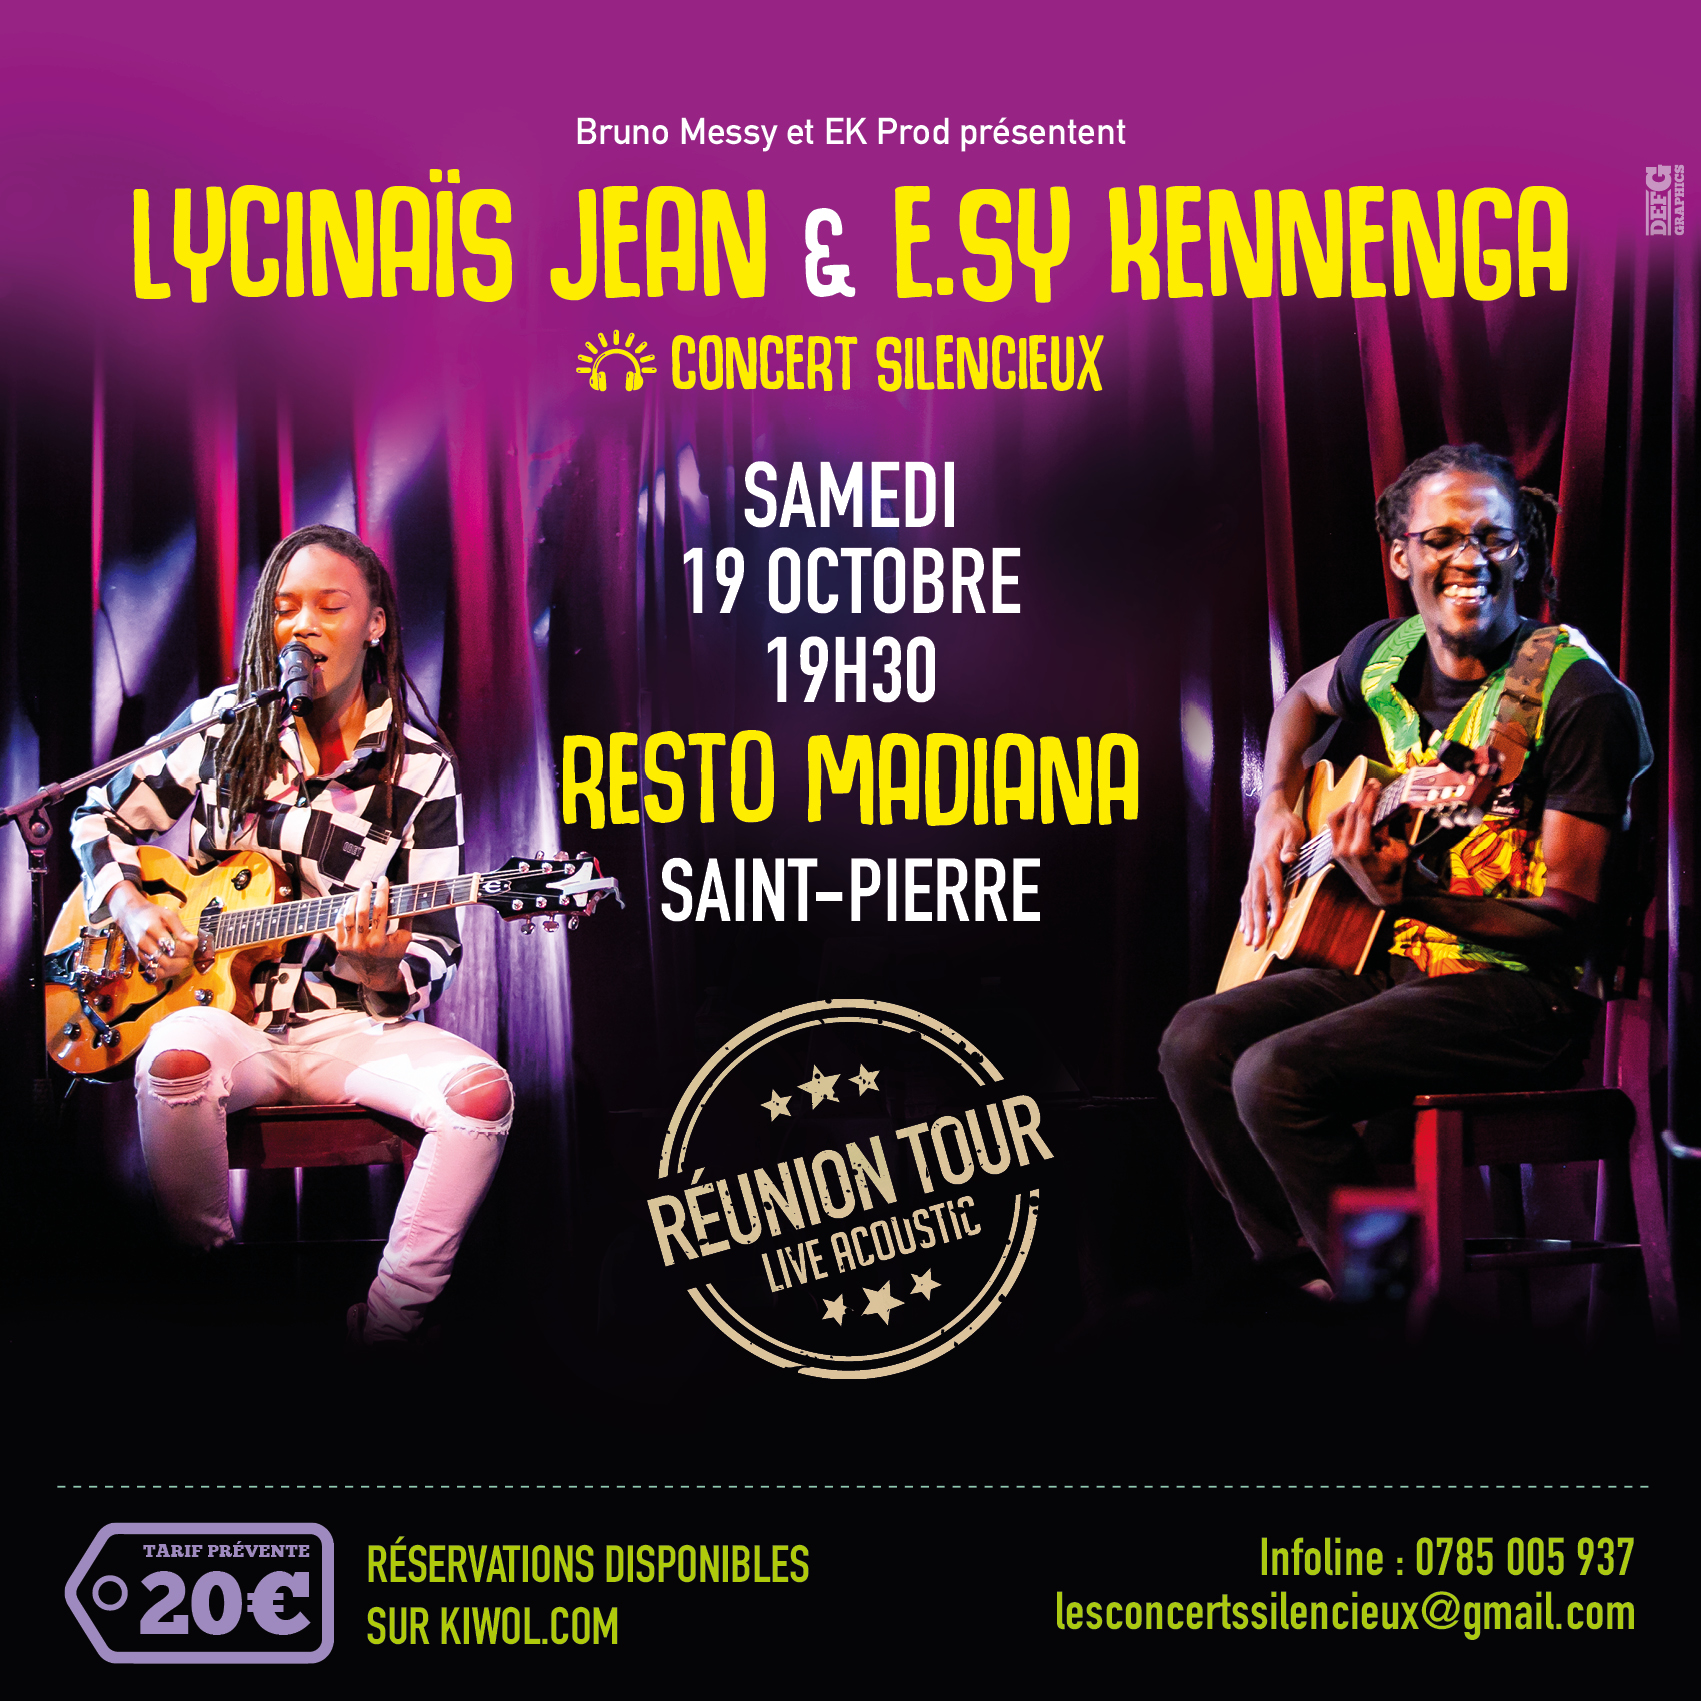 LYCINAÏS JEAN & E.SY KENNENGA -En DUO - Concert Live Acoustique - (Silencieux) – a SAINT-PIERRE à La REUNION